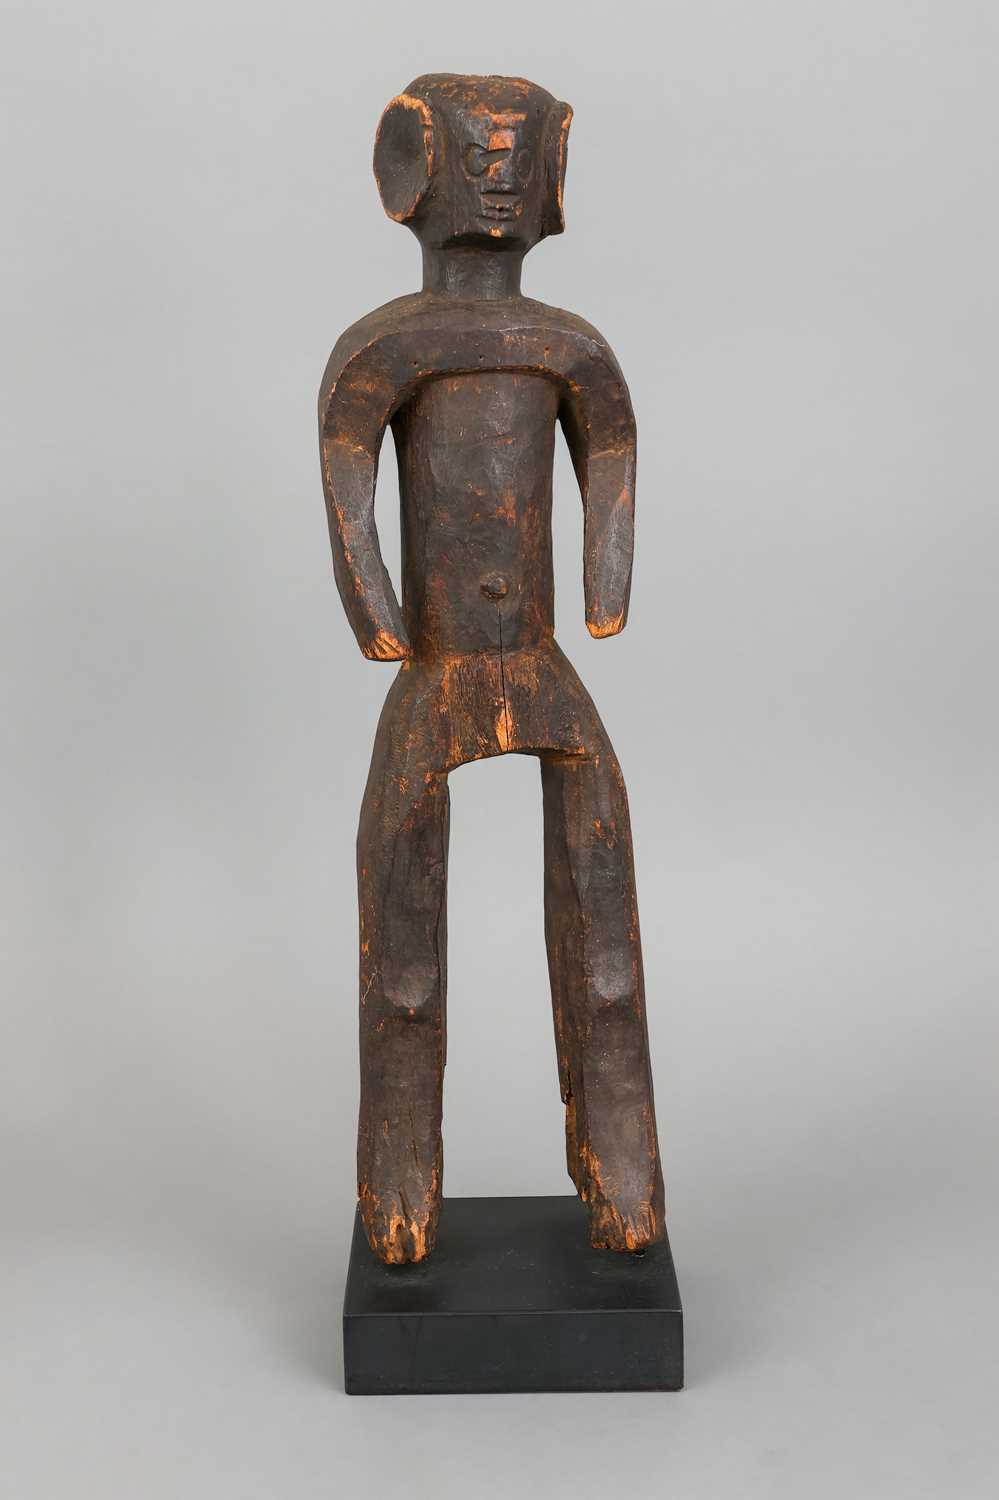 Afrikanische Ahnenfigur, wohl Mumuye (Nigeria, Westafrika)